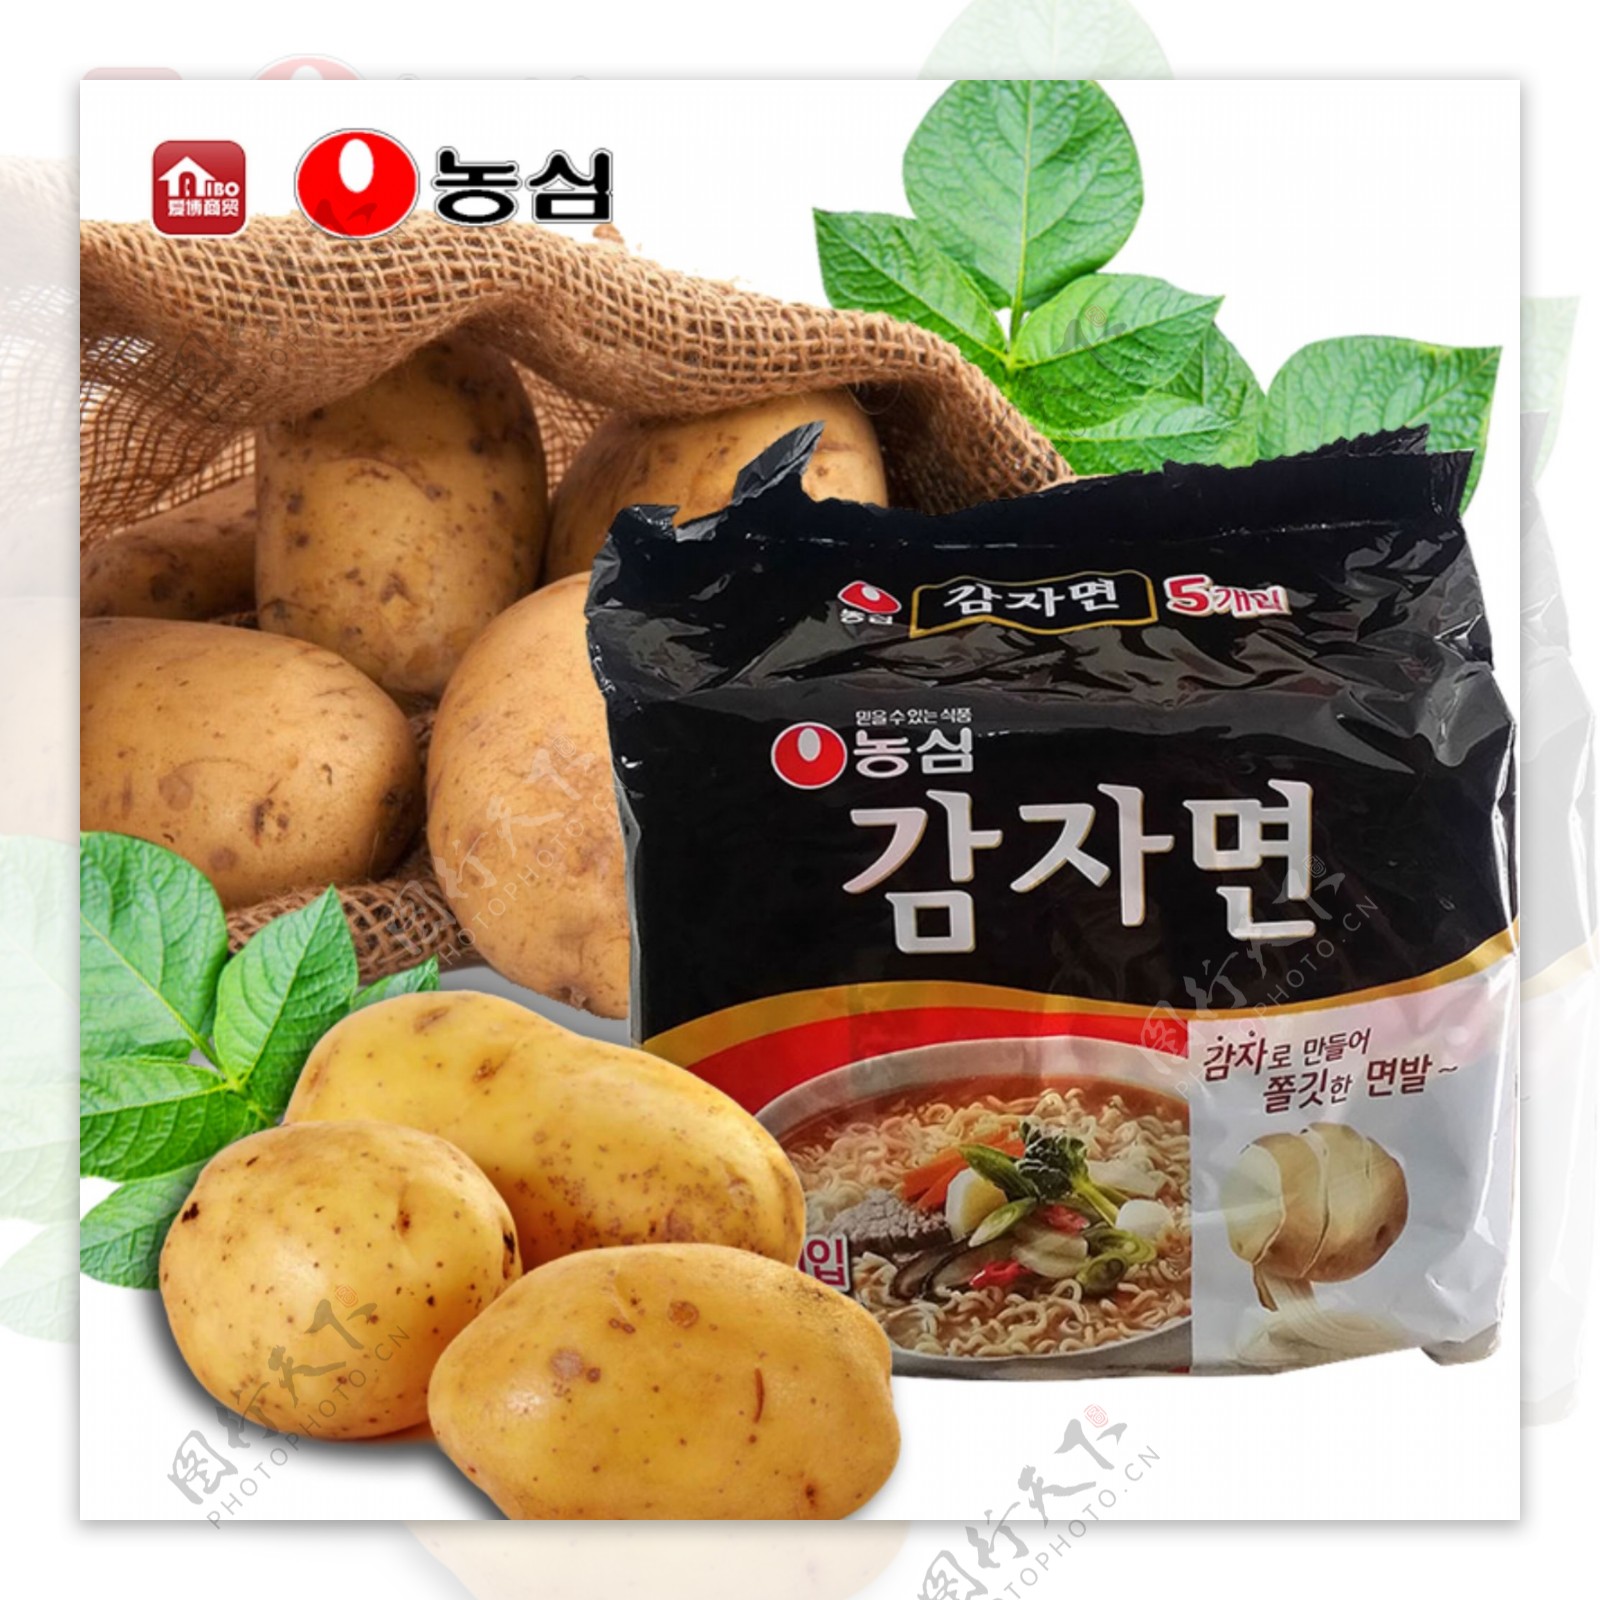 韩国农心土豆面5连包方便面